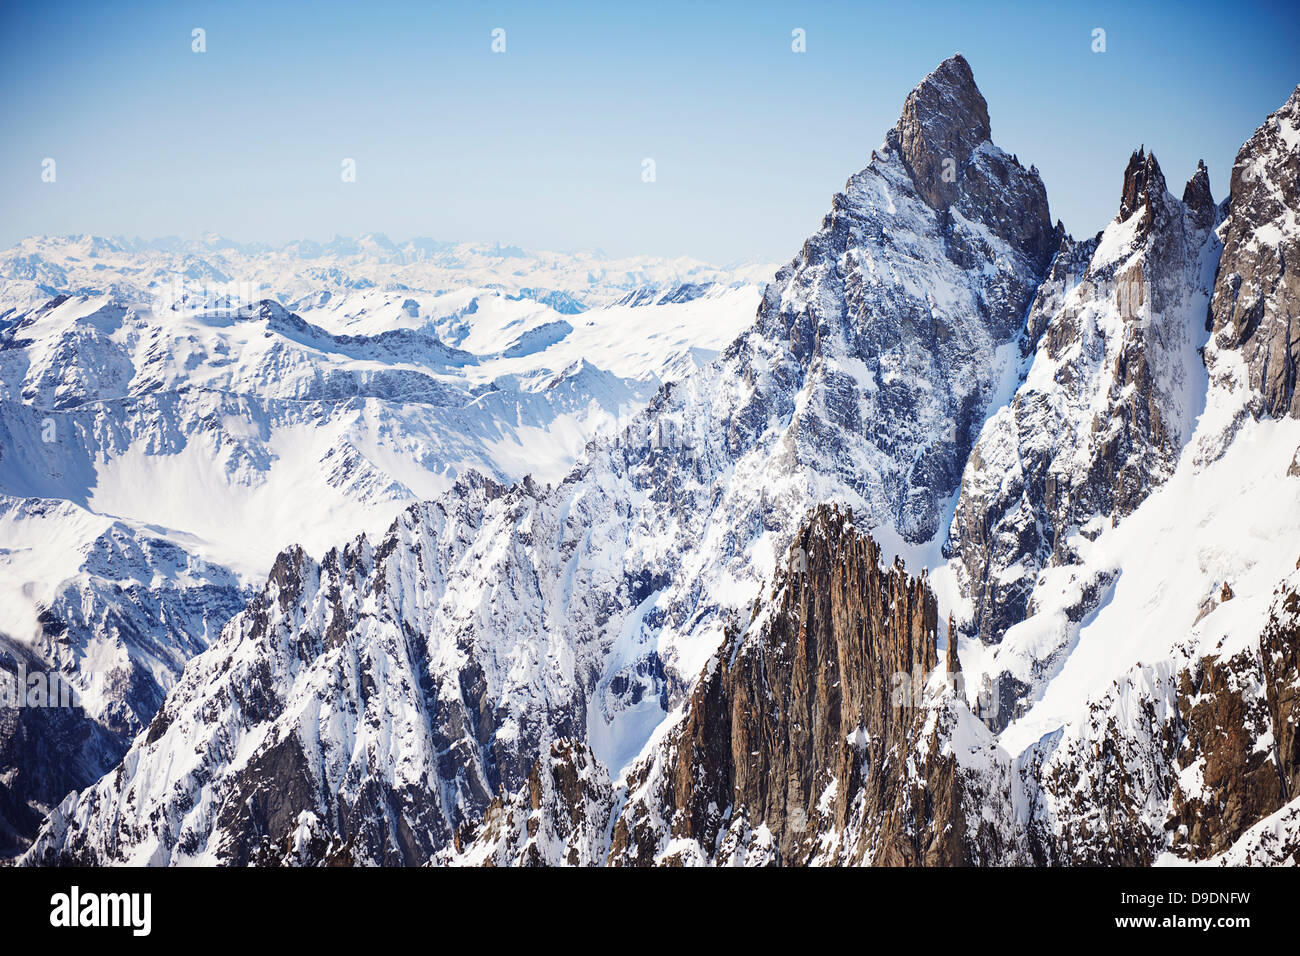 Montagnes aux sommets enneigés, pointe Helbronner, Chamonix, France Banque D'Images